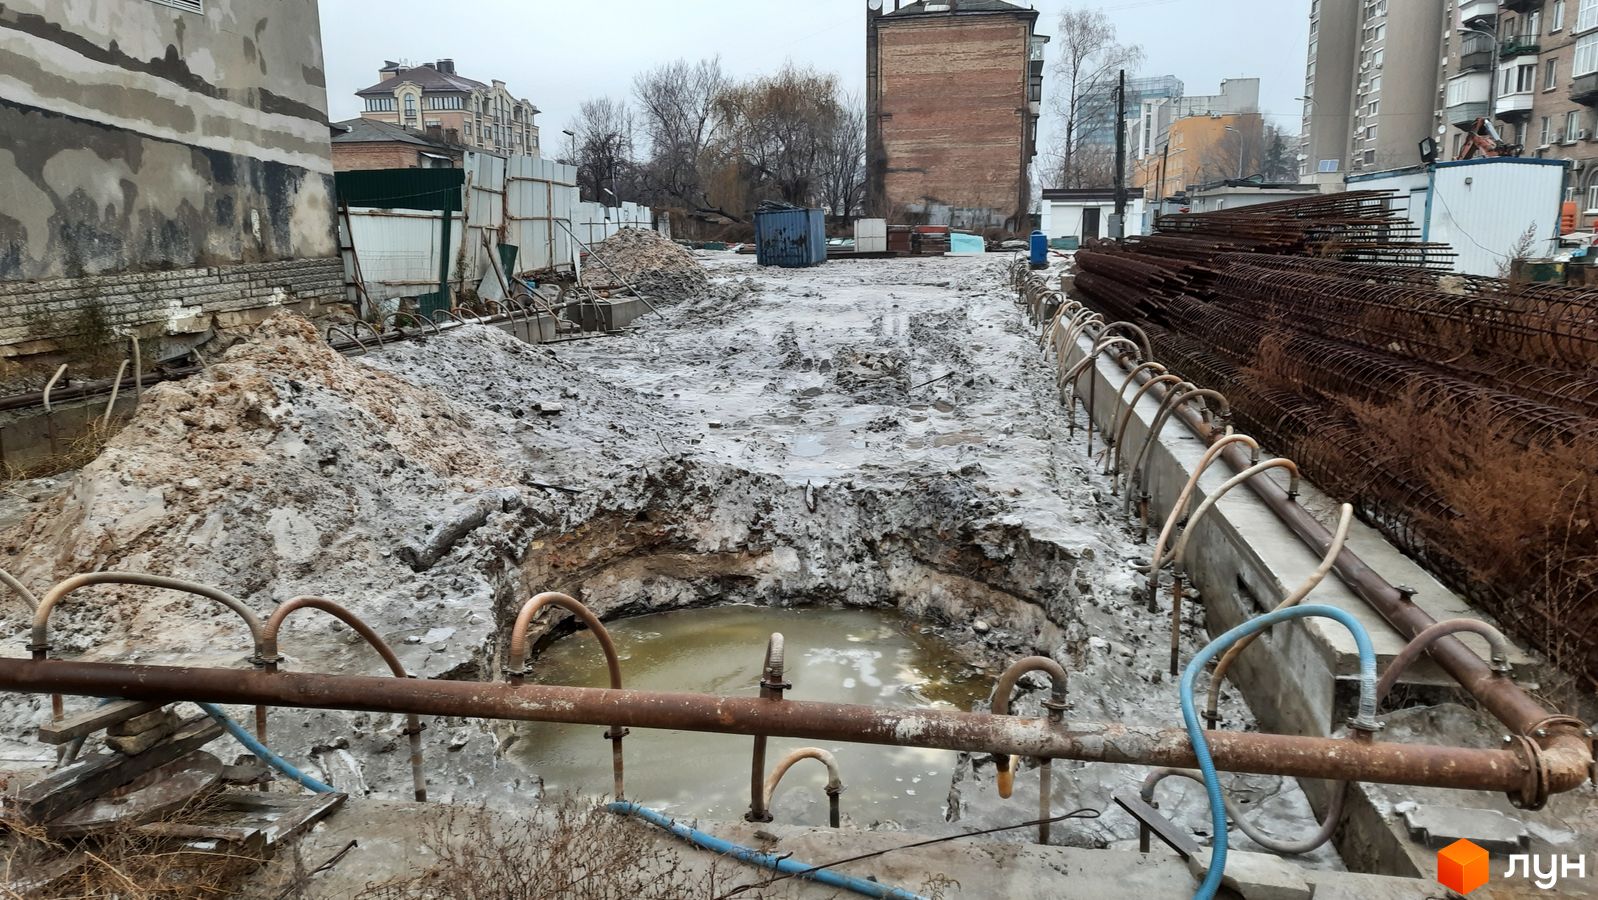 Ход строительства ул. Казимира Малевича, 44, 46, 0, декабрь 2020